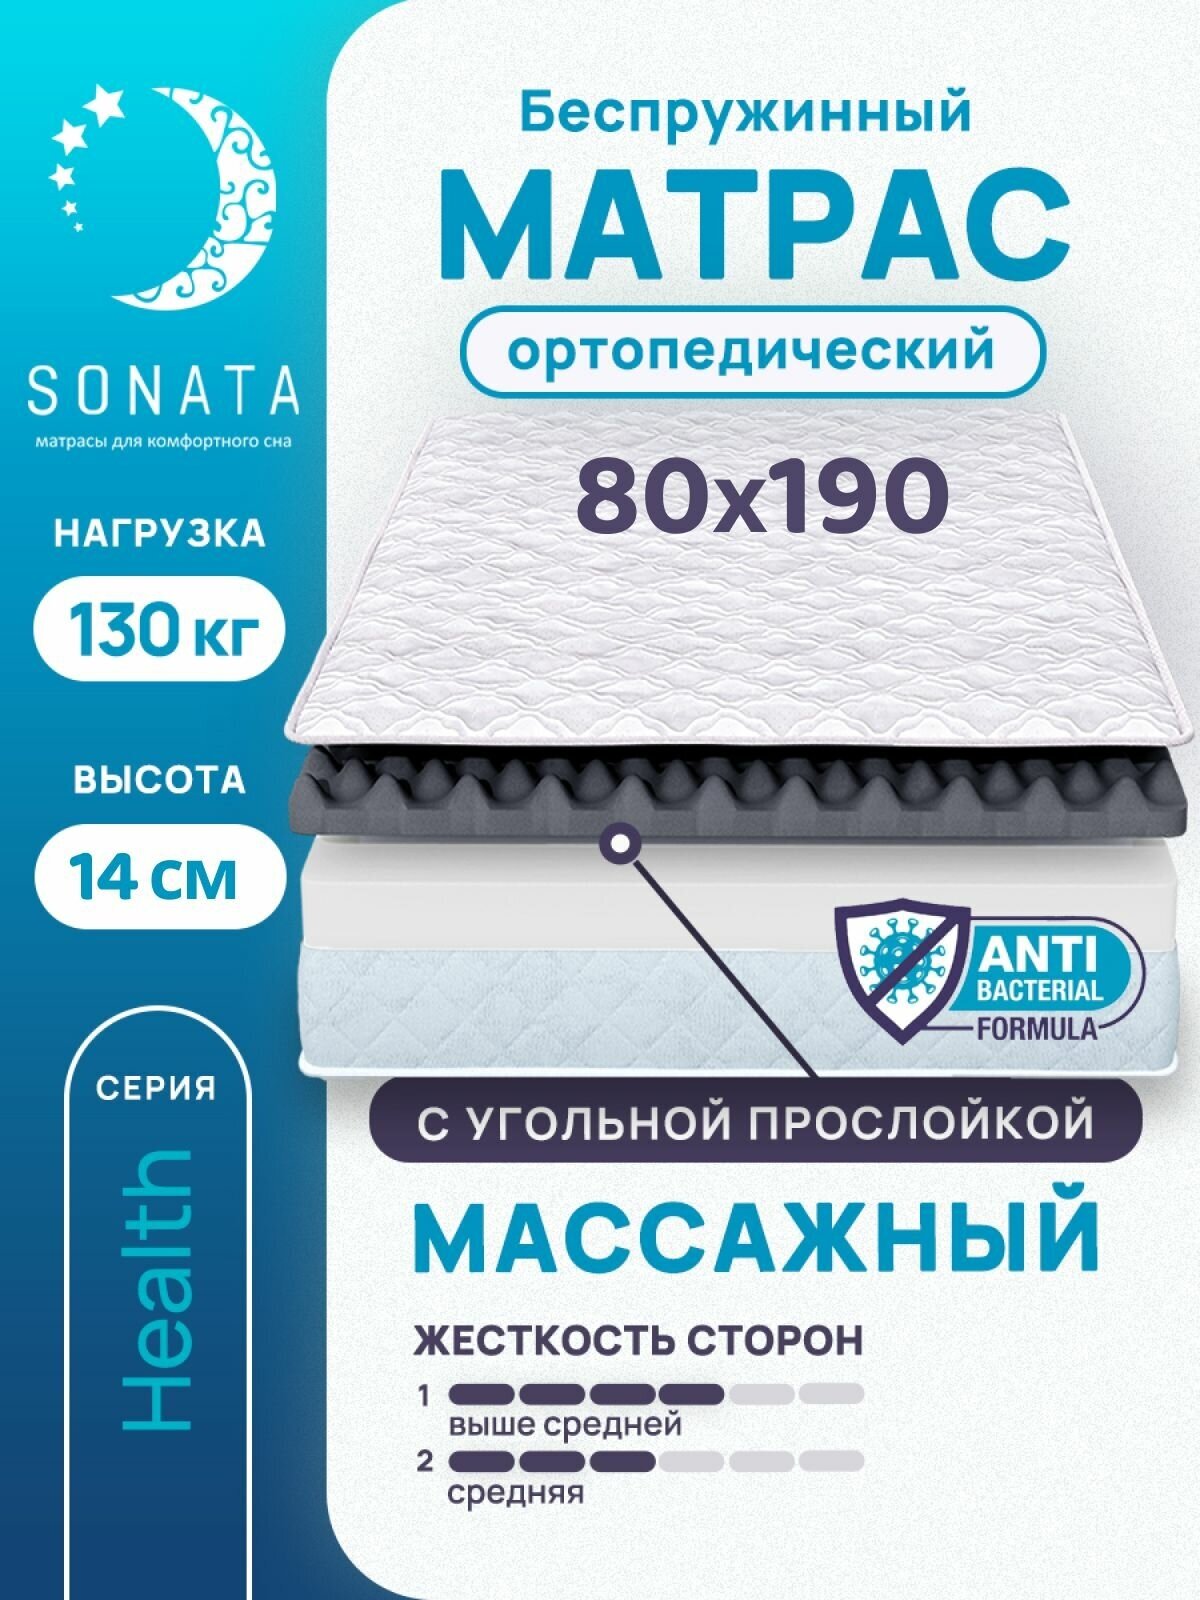 Матрас 80х190 см SONATA, беспружинный, односпальный, матрац для кровати, высота 14 см, с массажным эффектом